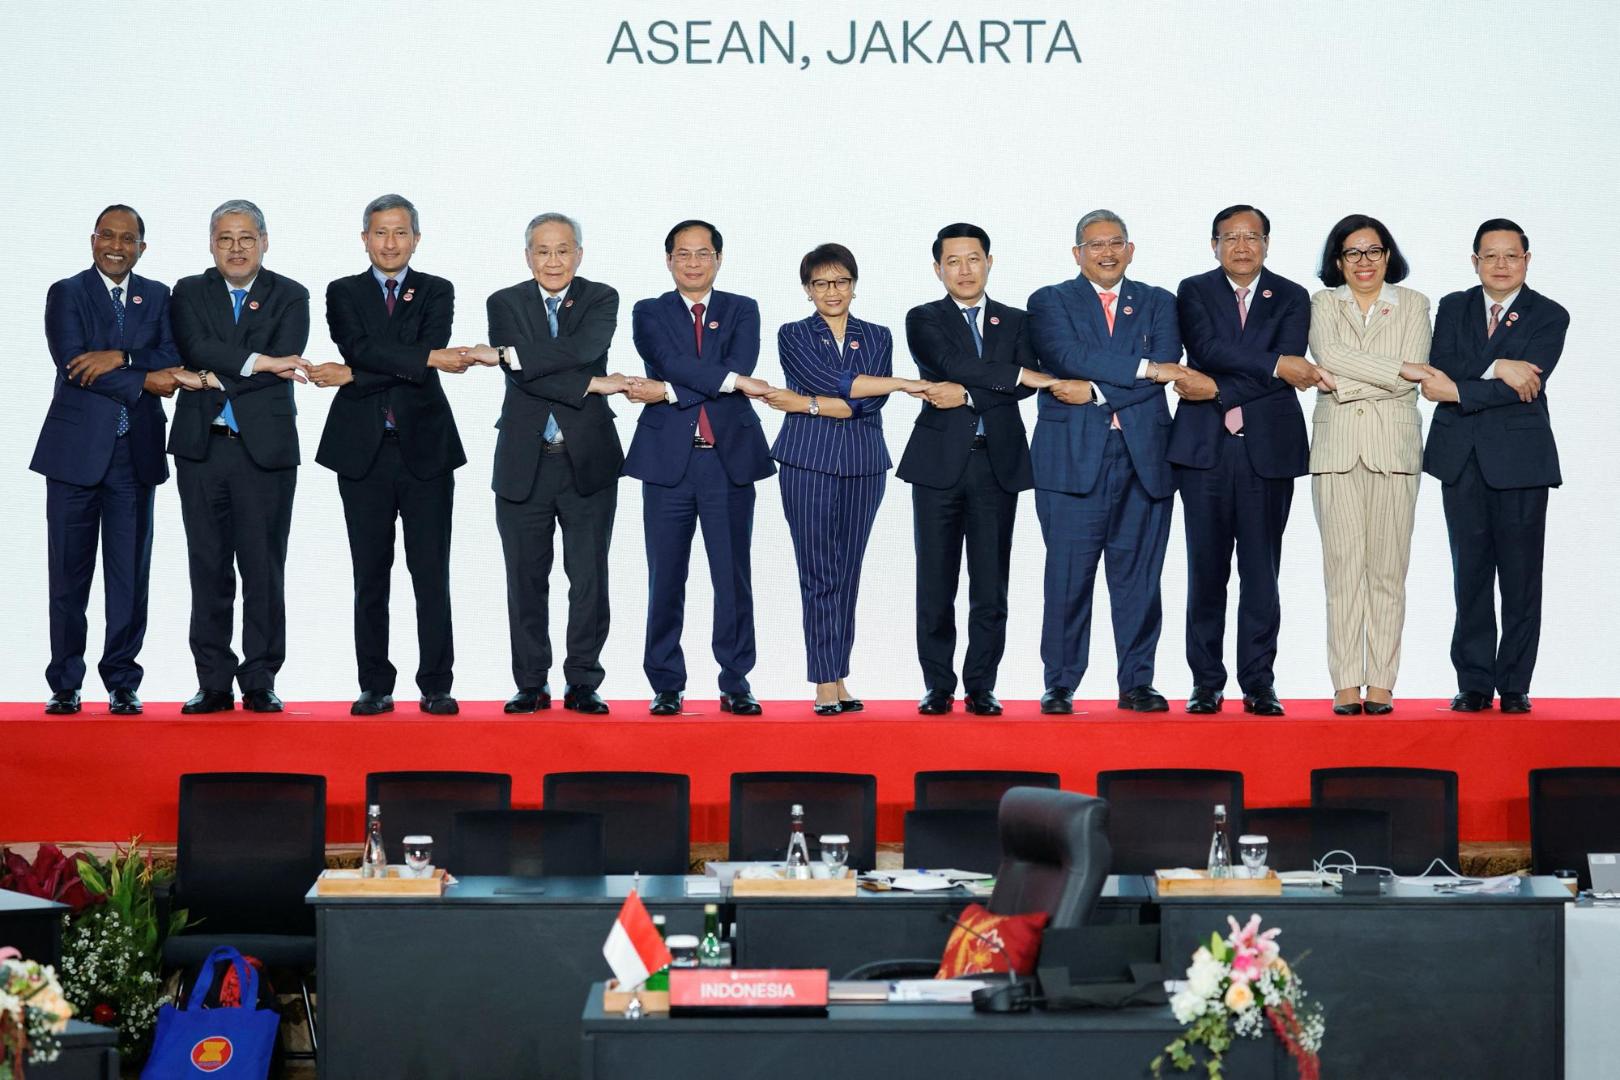 Tagung des ASEAN-Koordinierungsrates (ACC) in Jakarta